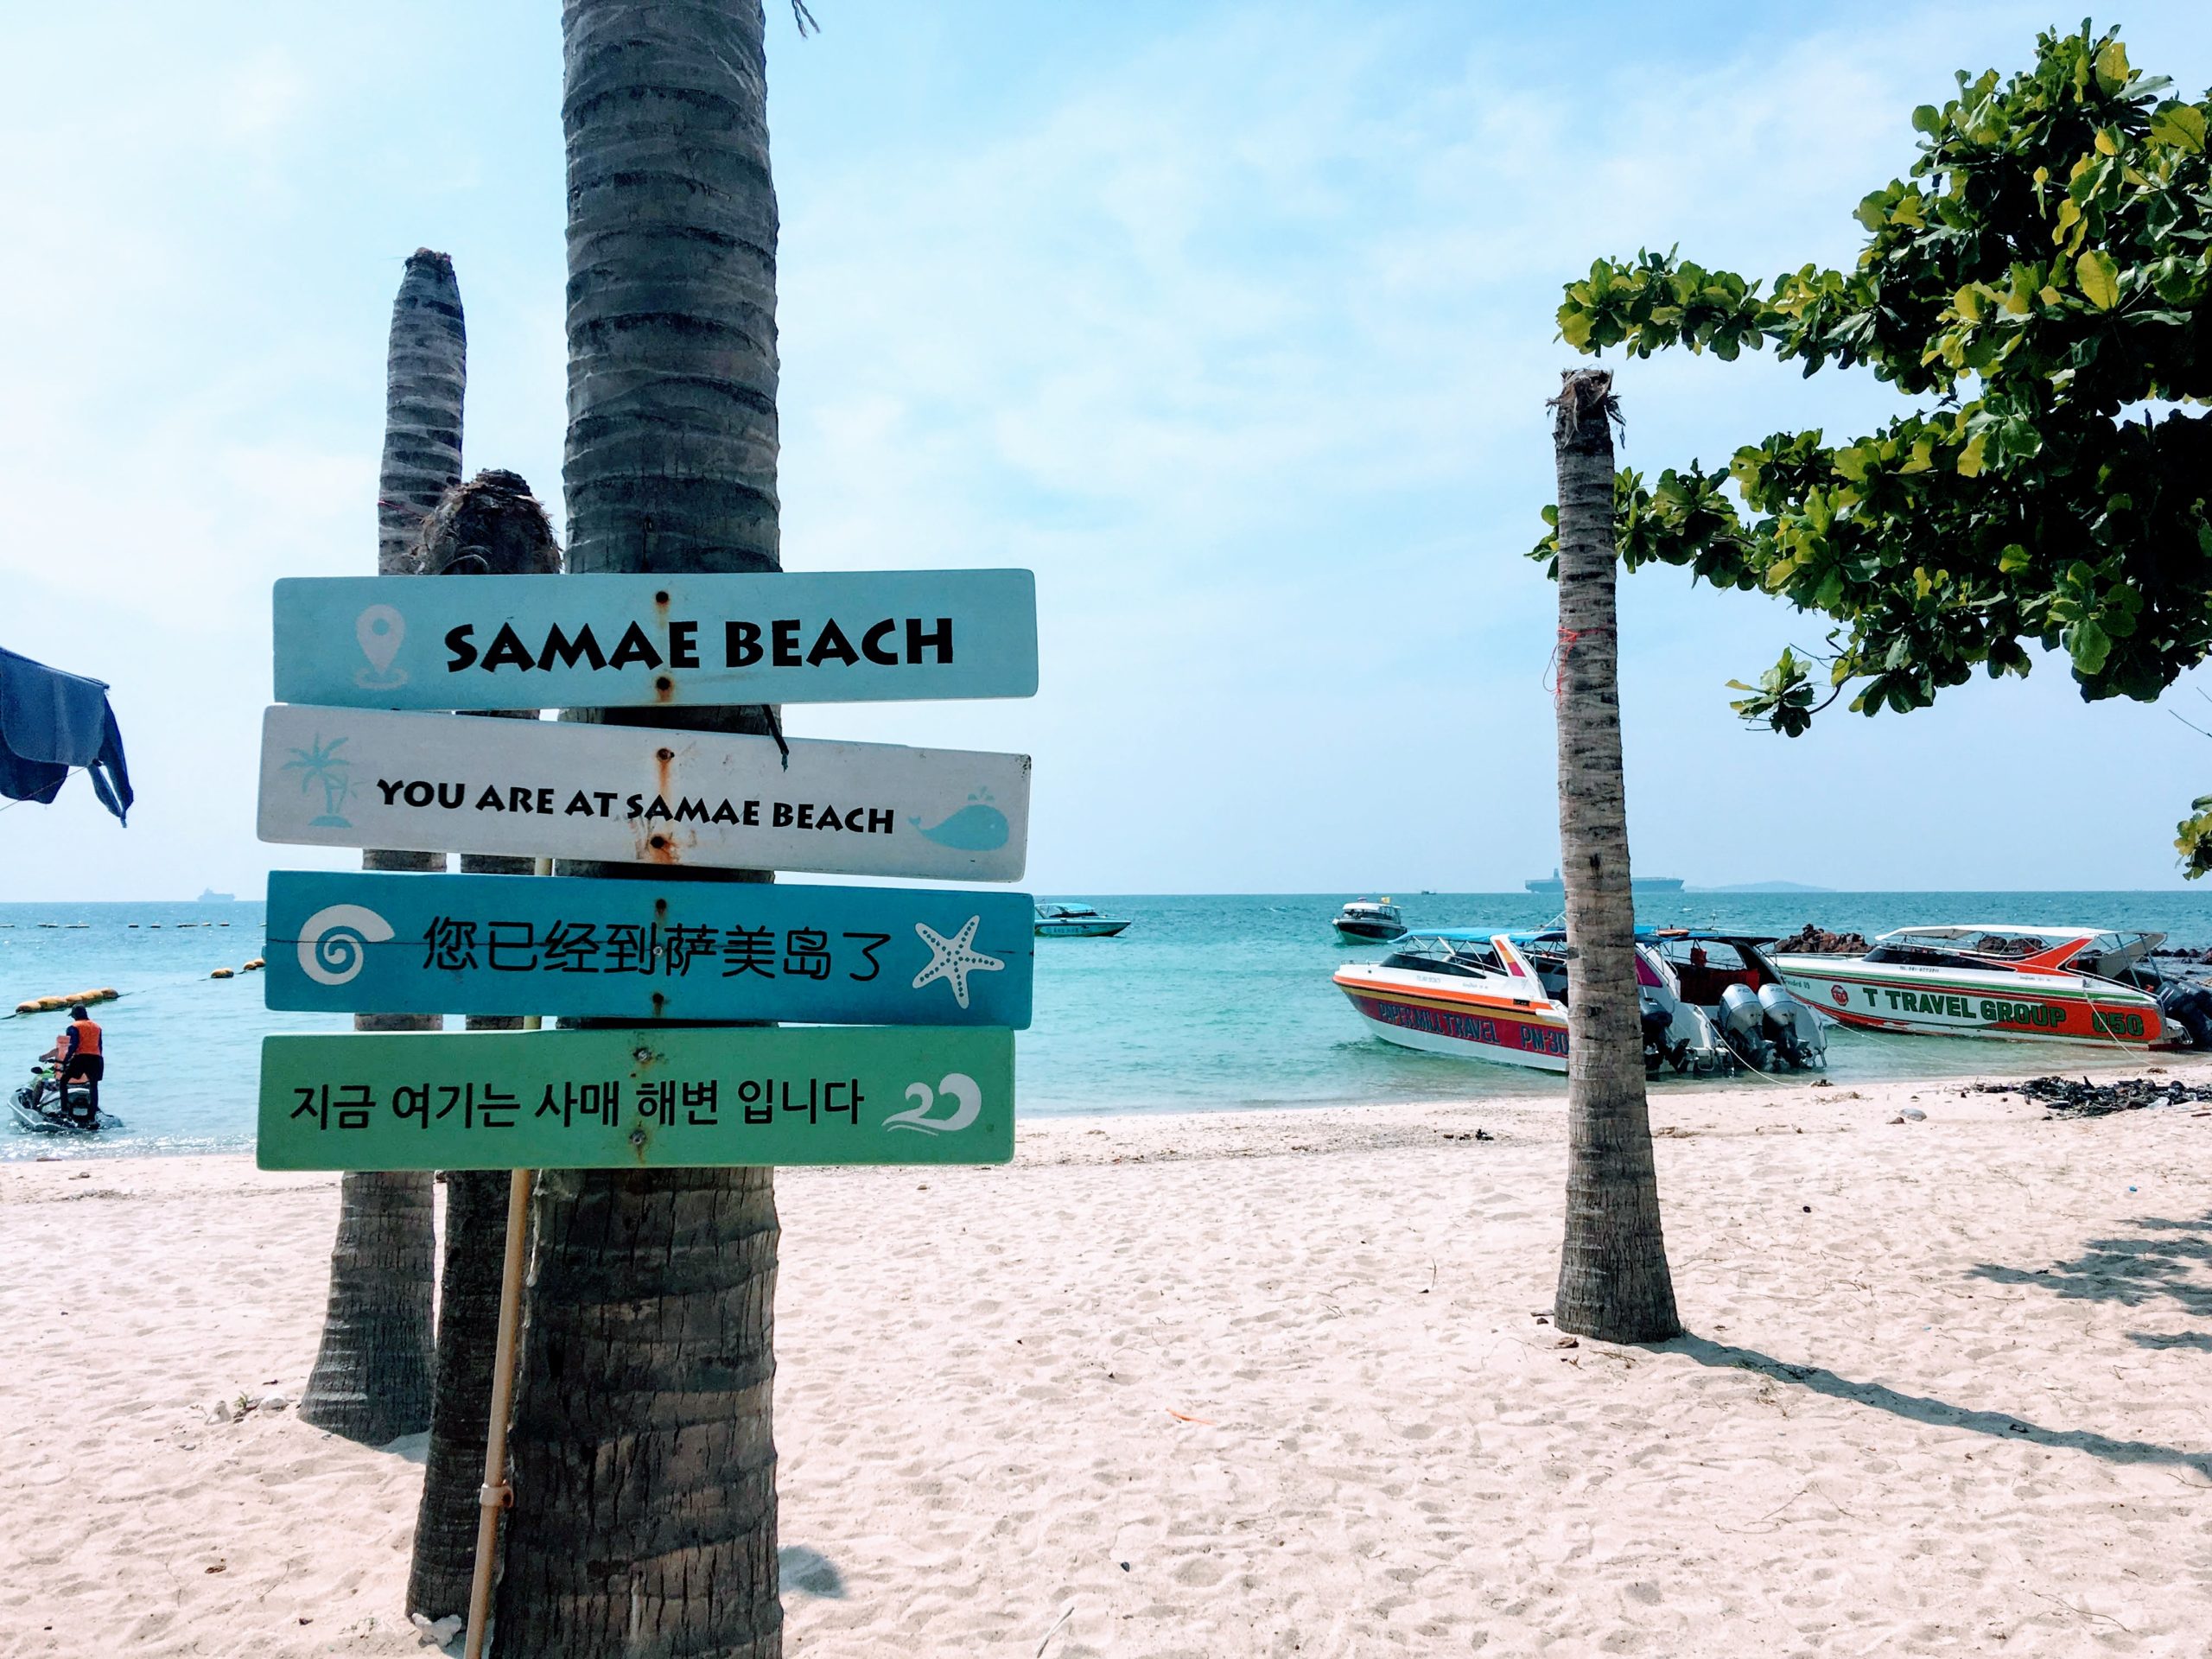 タイ 7つのビーチを持つラン島 行き方 魅力 ビーチランキングのご紹介 Supi Blog